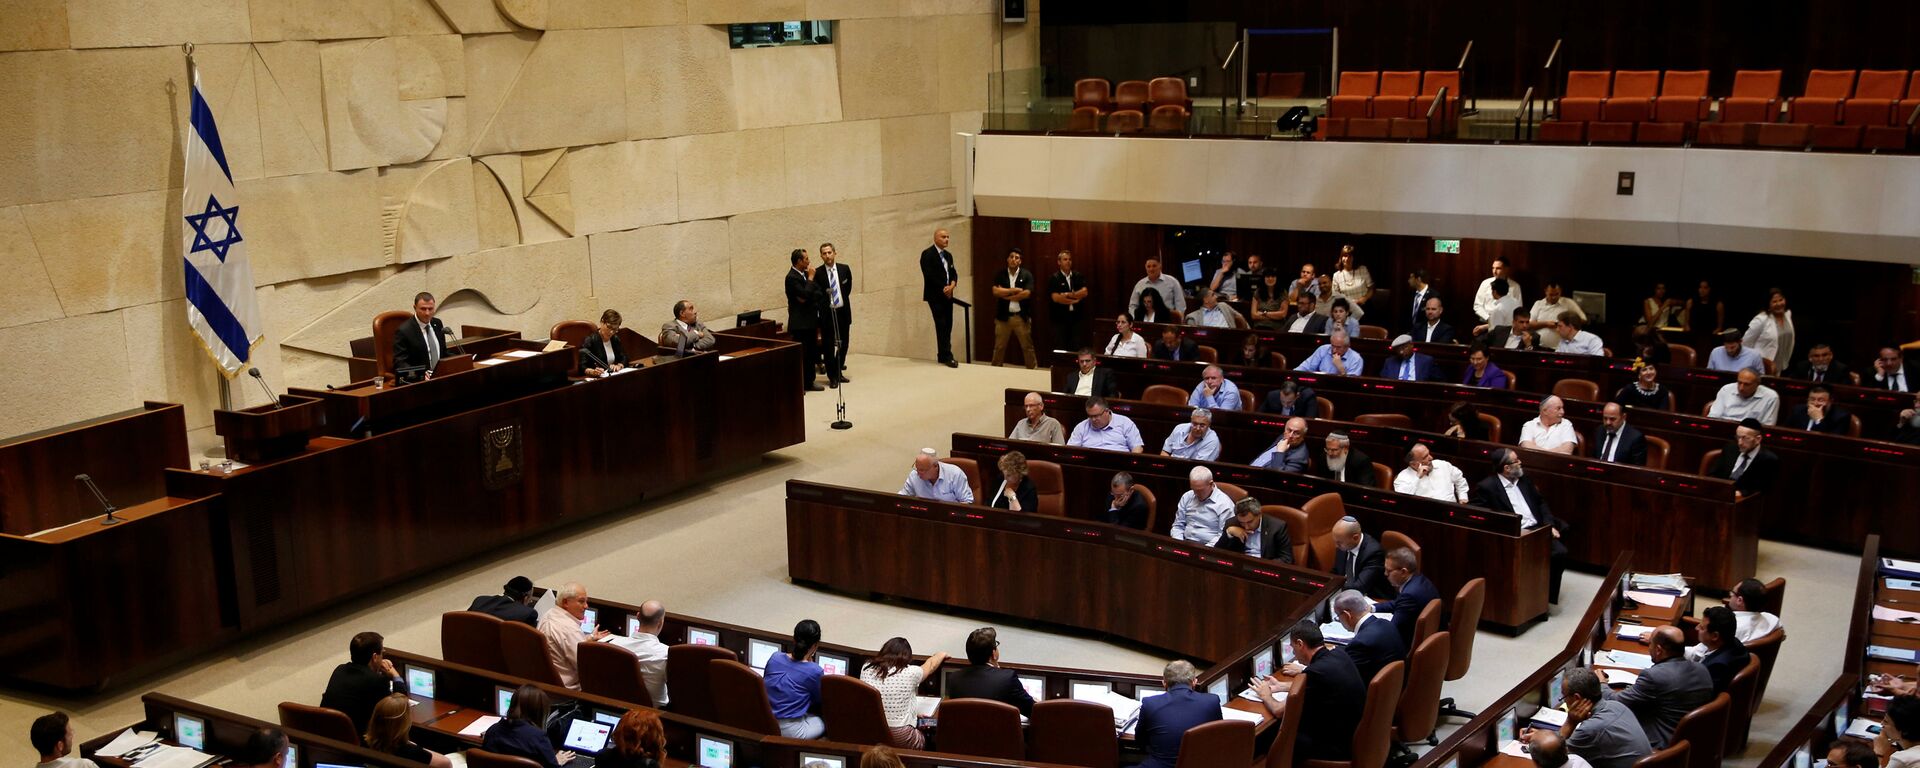 La Knesset, Parlamento israelí - Sputnik Mundo, 1920, 12.07.2016